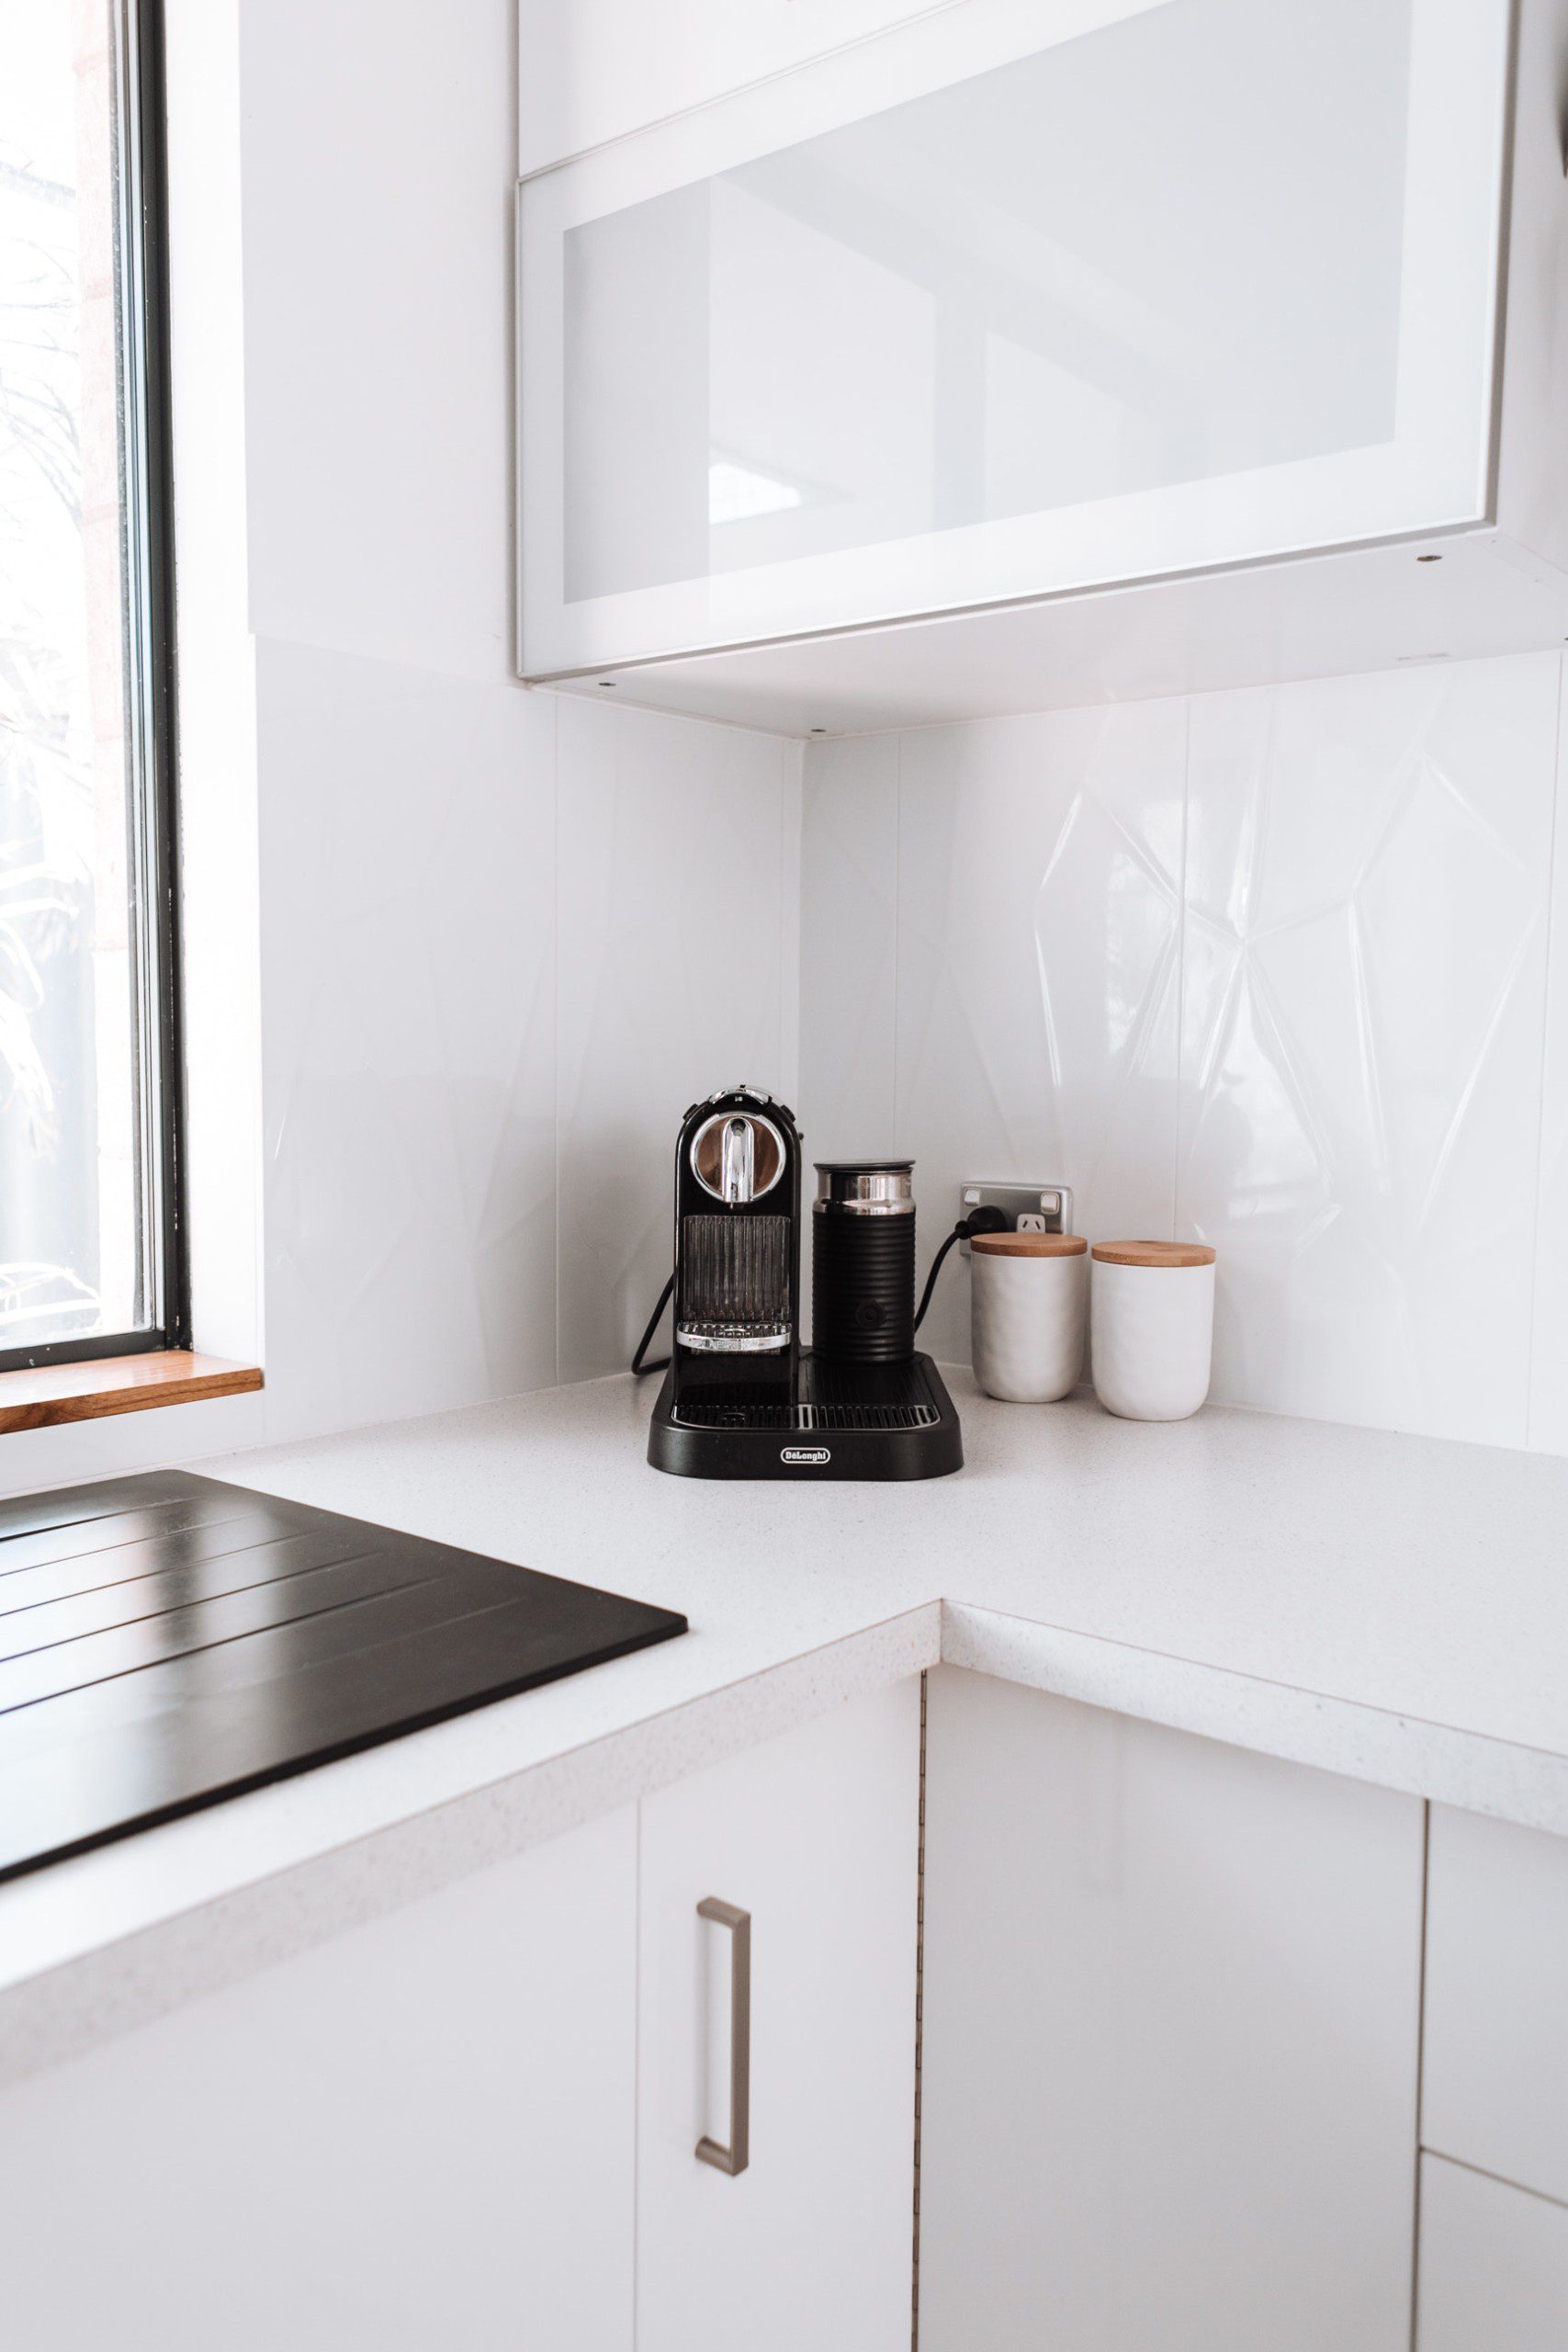 Imagem do cantinho do café em uma bancada da cozinha.